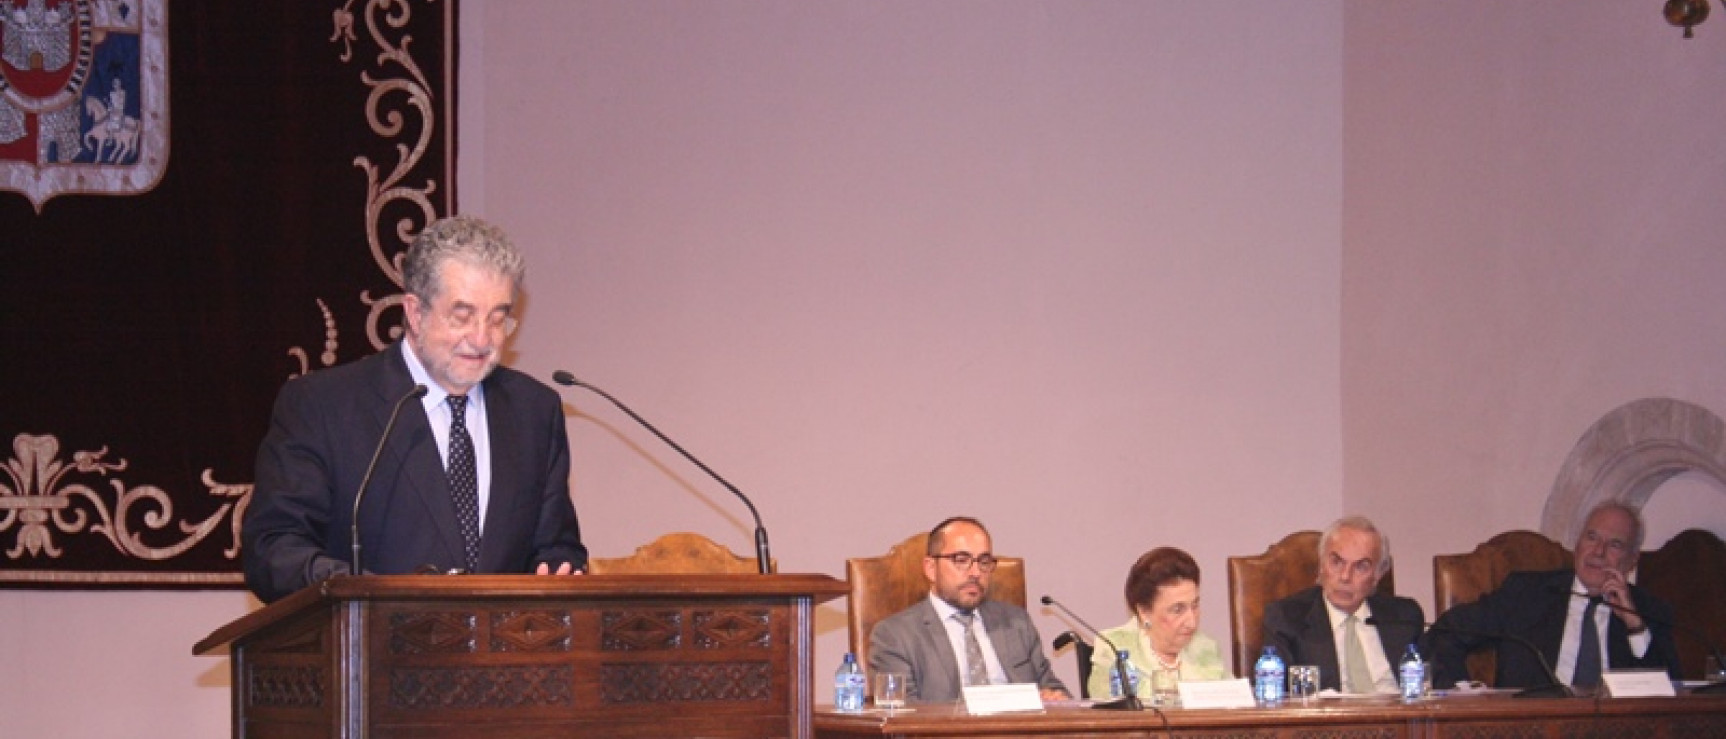 José Antonio Pascual pronuncia la conferencia en el acto académico de la Fundación Duques de Soria.